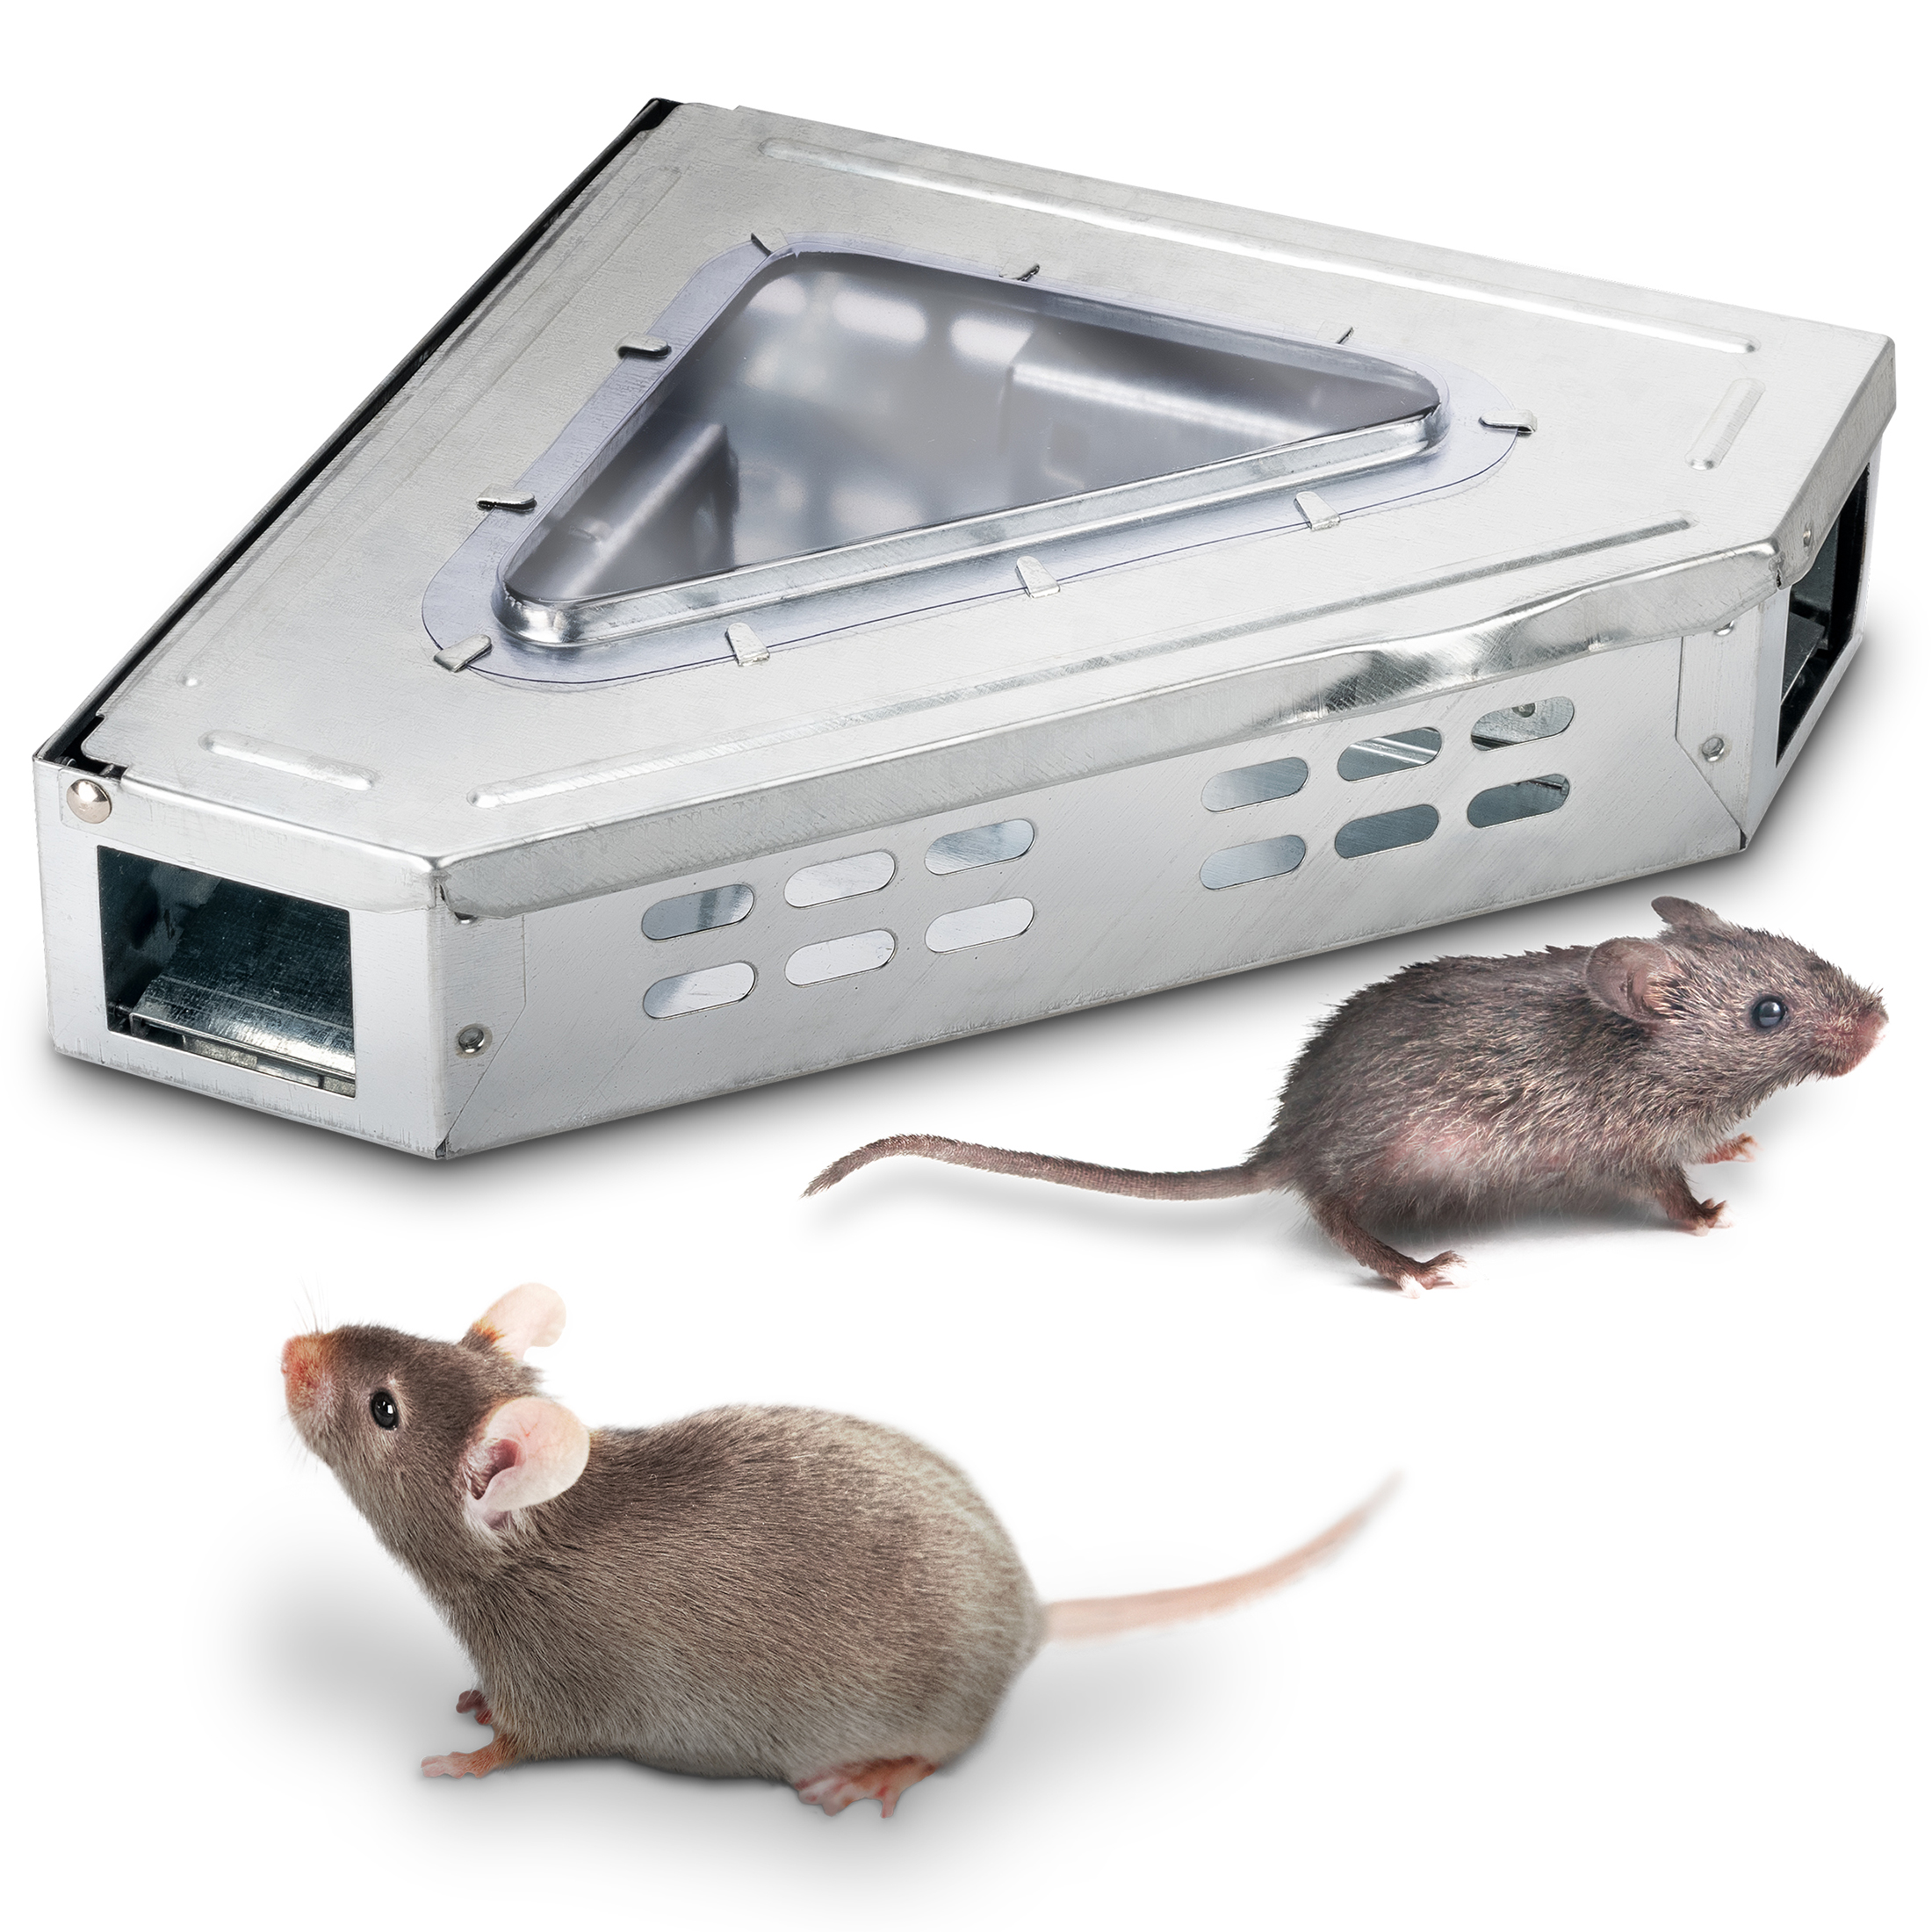 Mäuse-Feind Mobil, batteriebetriebener Mäuseschreck, Ultraschall